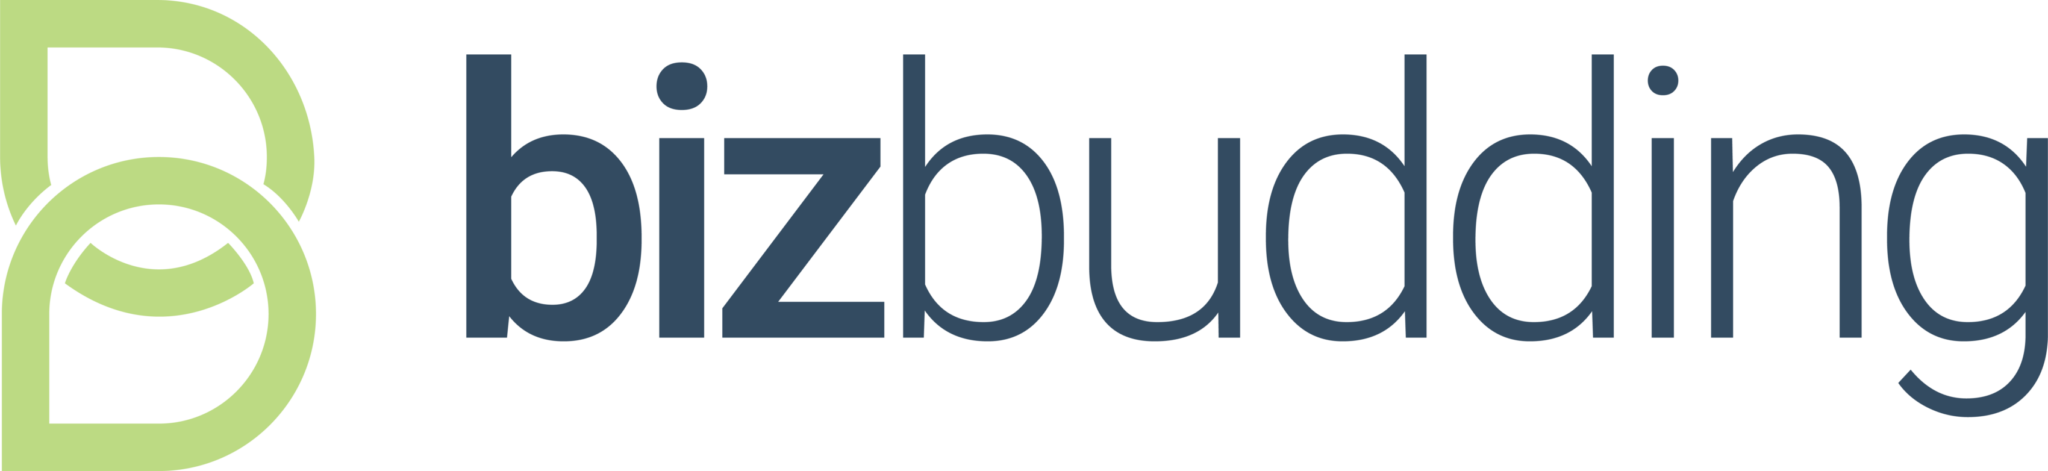 BizBudding logo V1